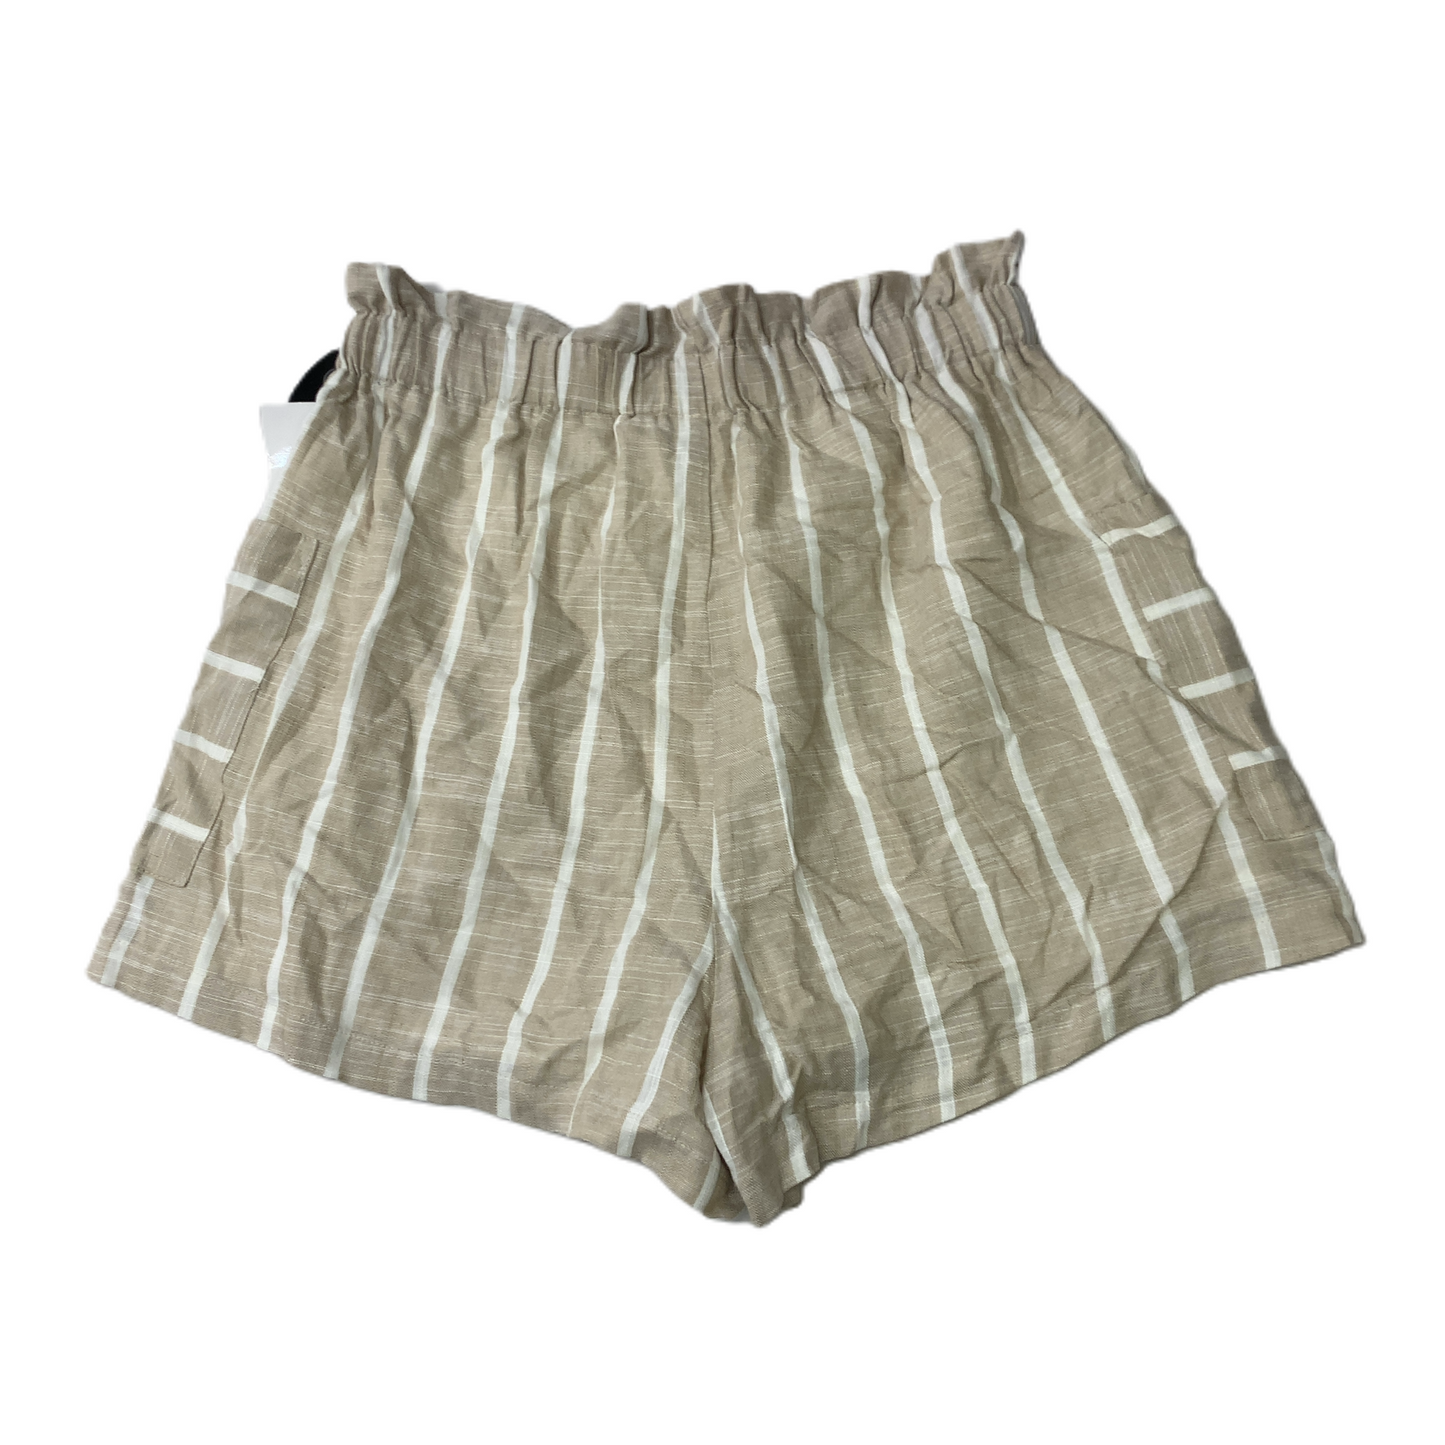 Tan & White  Shorts By Lush  Size: S